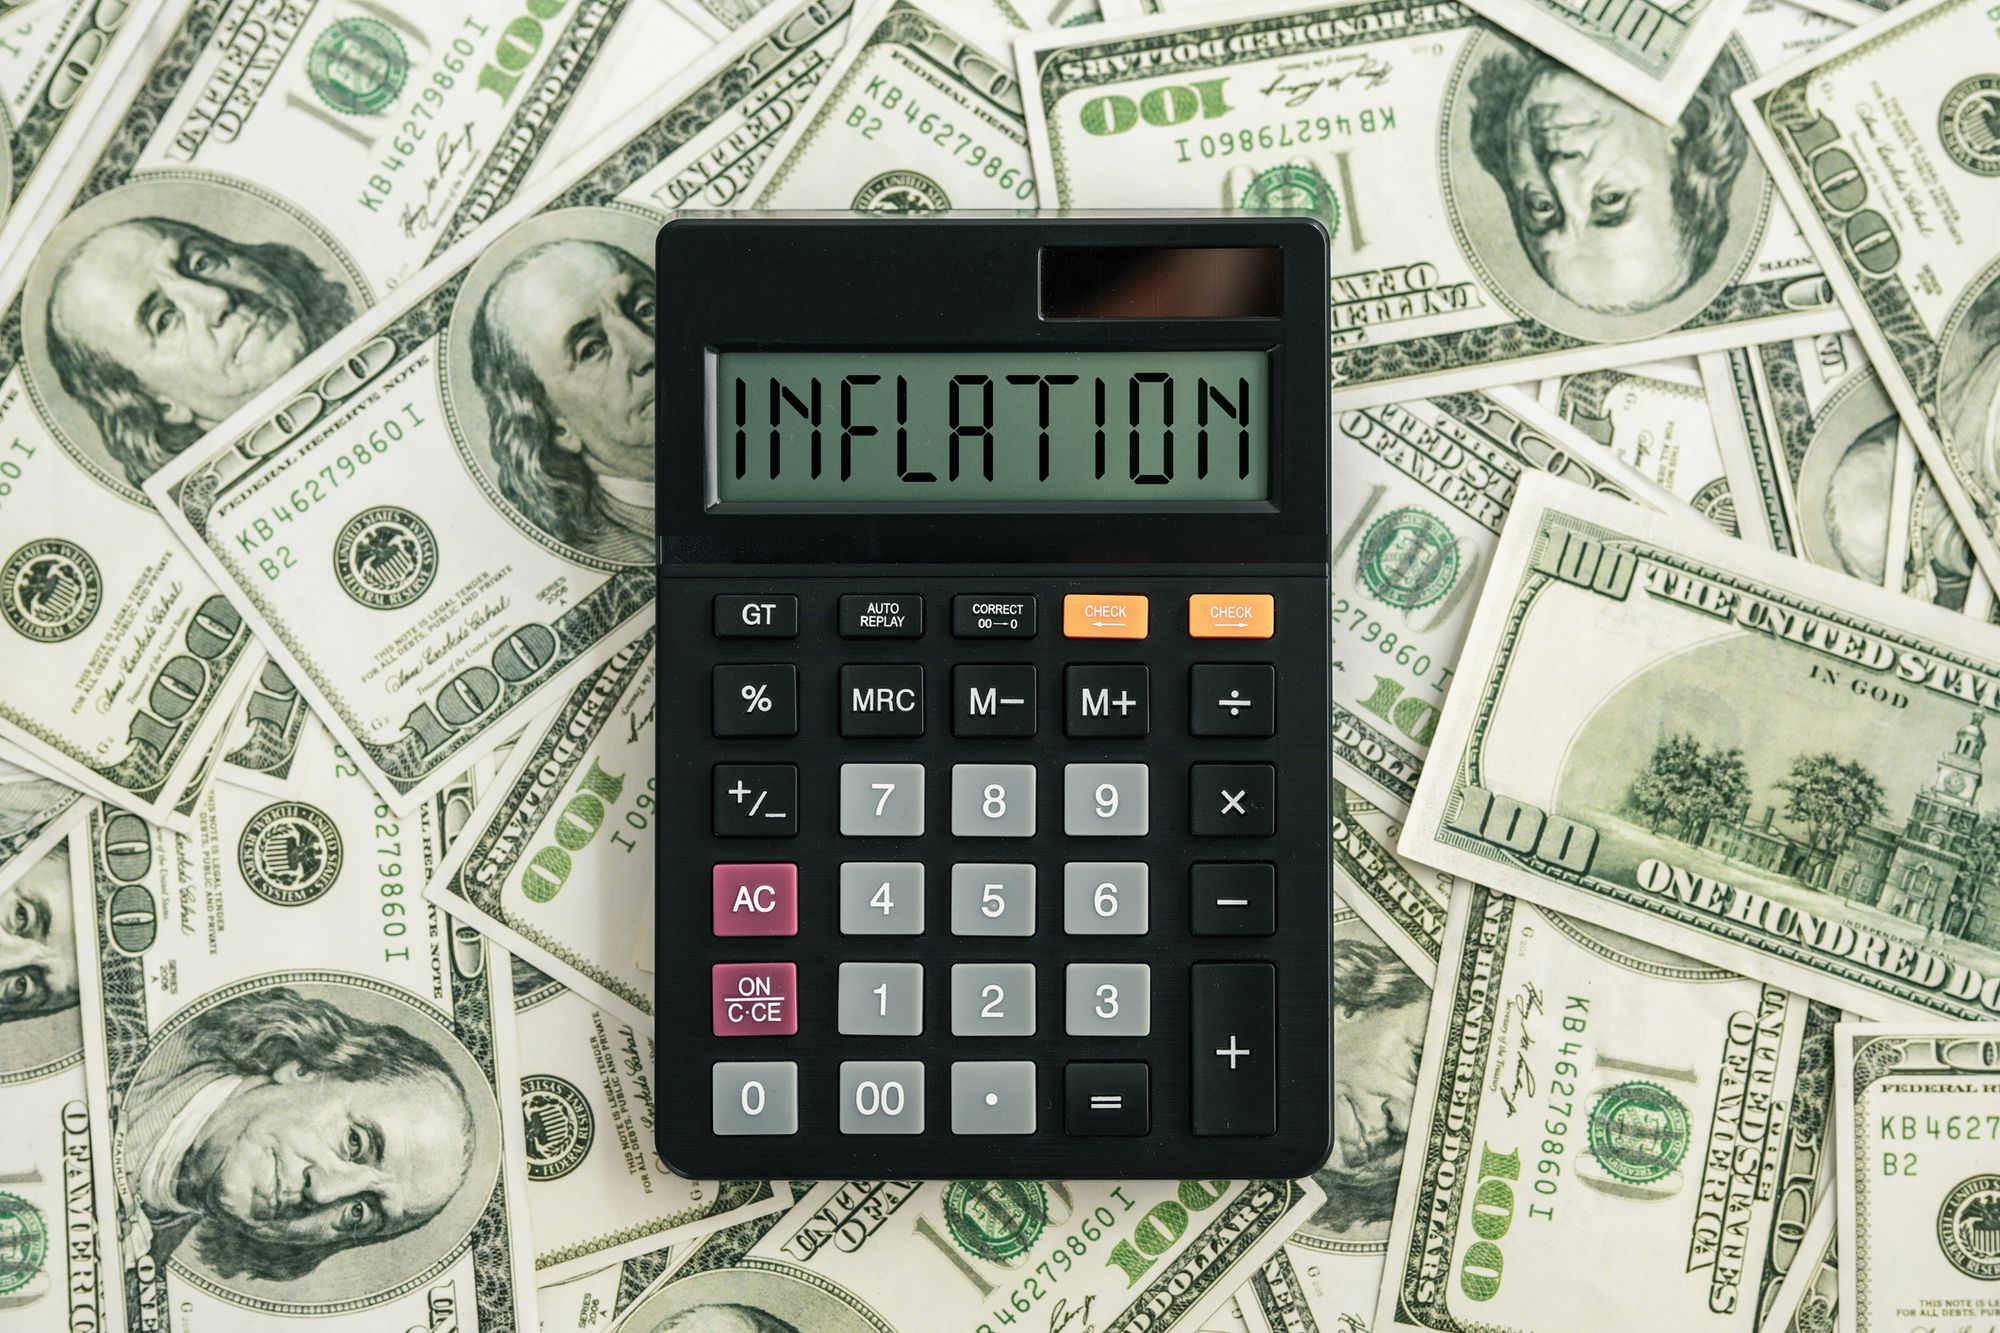 지폐 위에 INFLATION 글자가 표현되어 있는 계산기